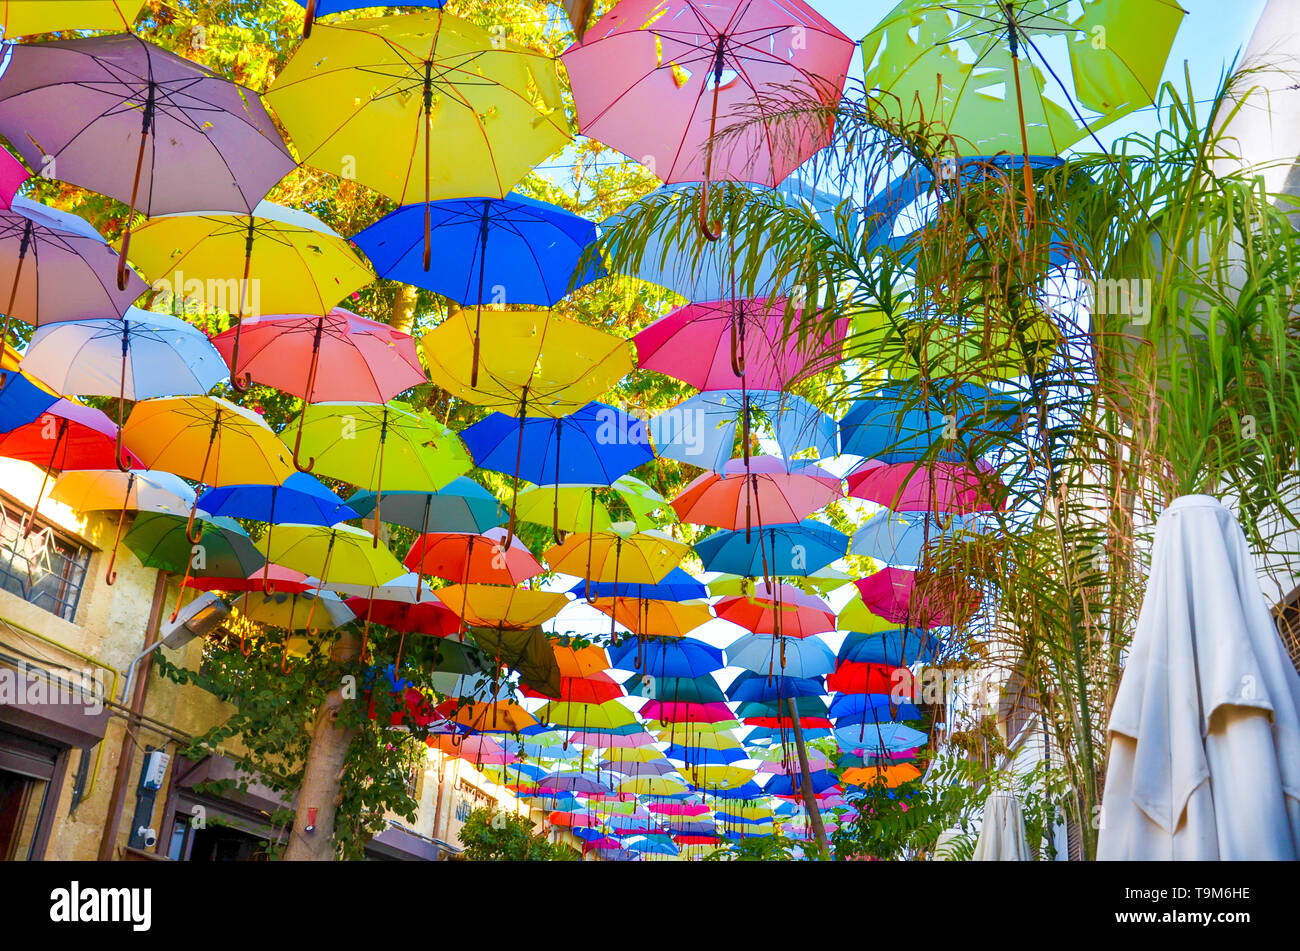 Ombrelloni colorati la decorazione della parte superiore della strada cipriota di Nicosia. L'ombrello serve anche come un ombra e protezione contro il sole. Foto Stock